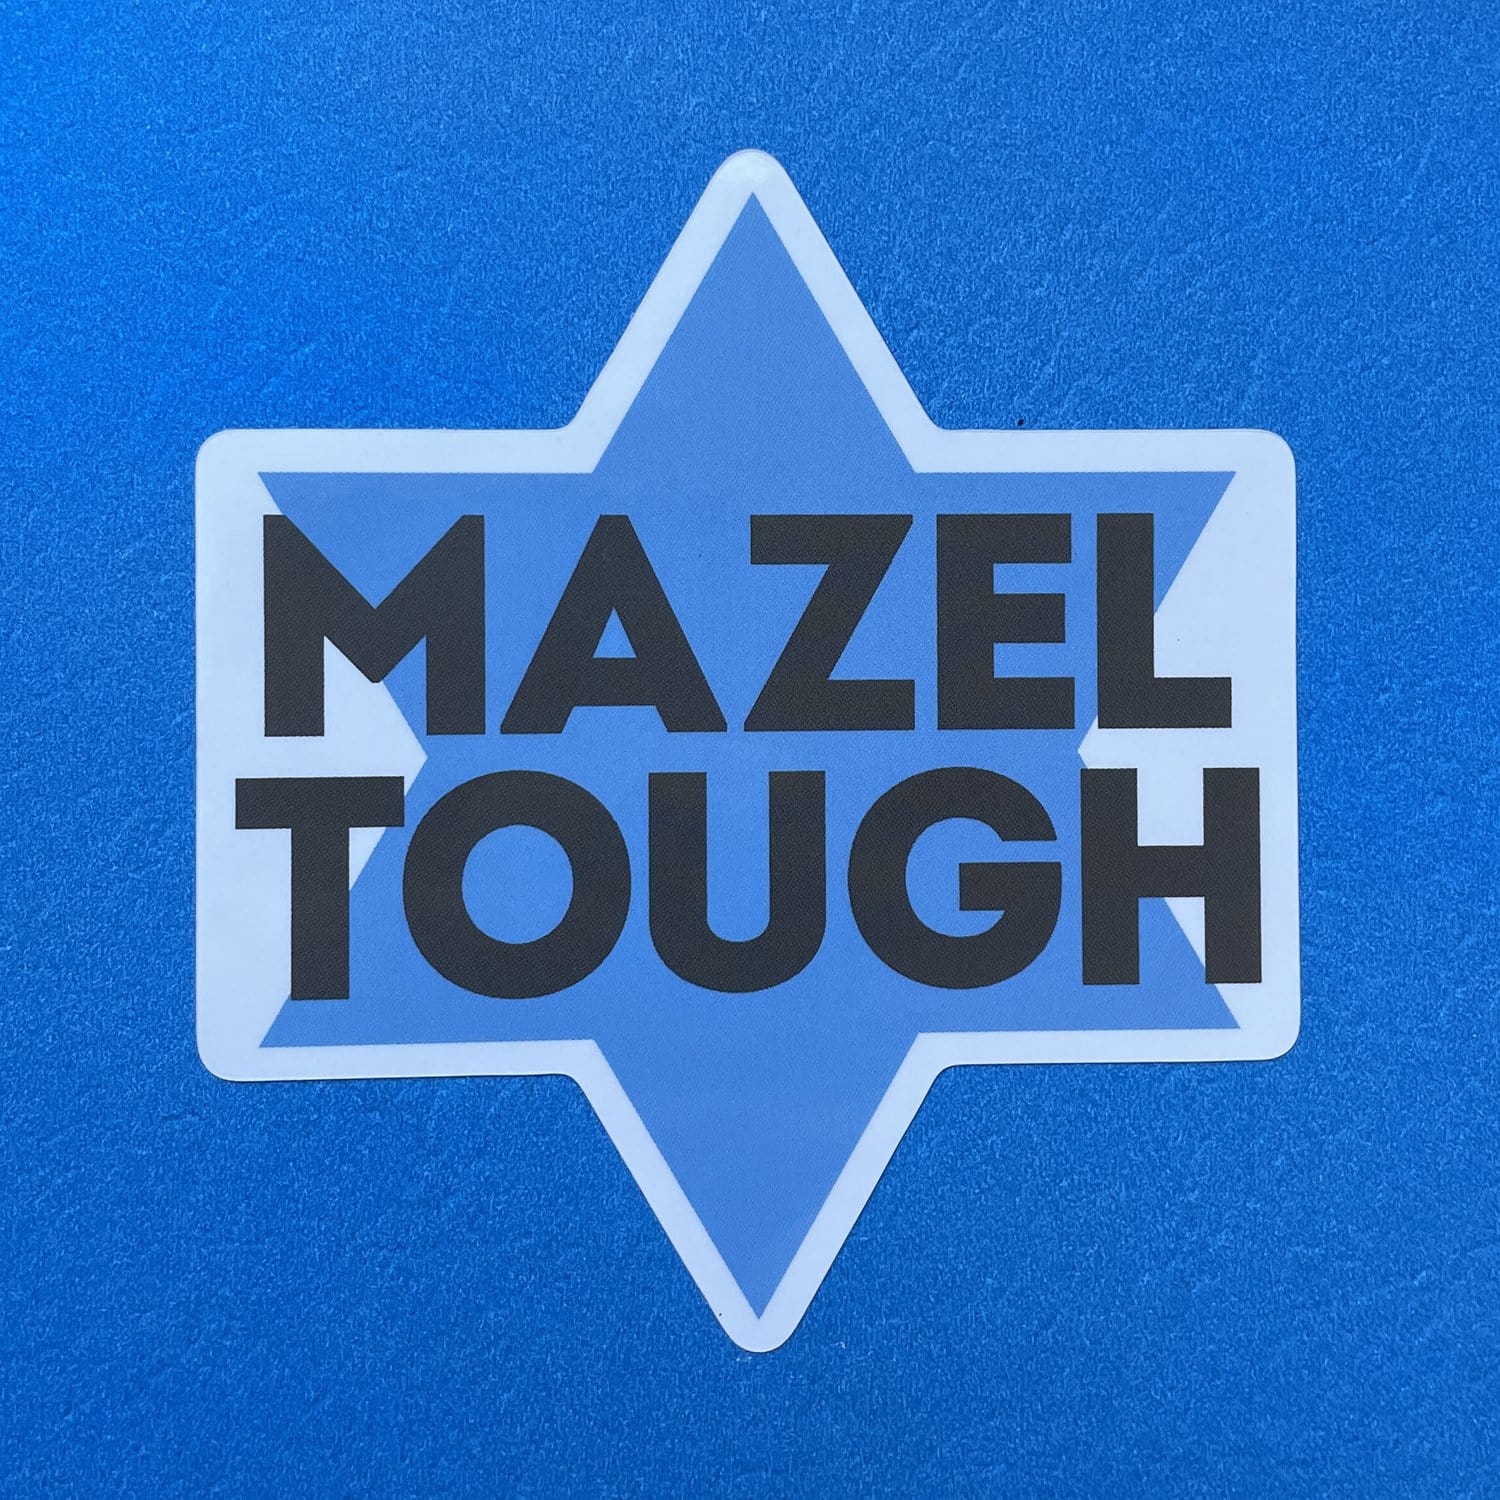 Mazel Tough - Sticker